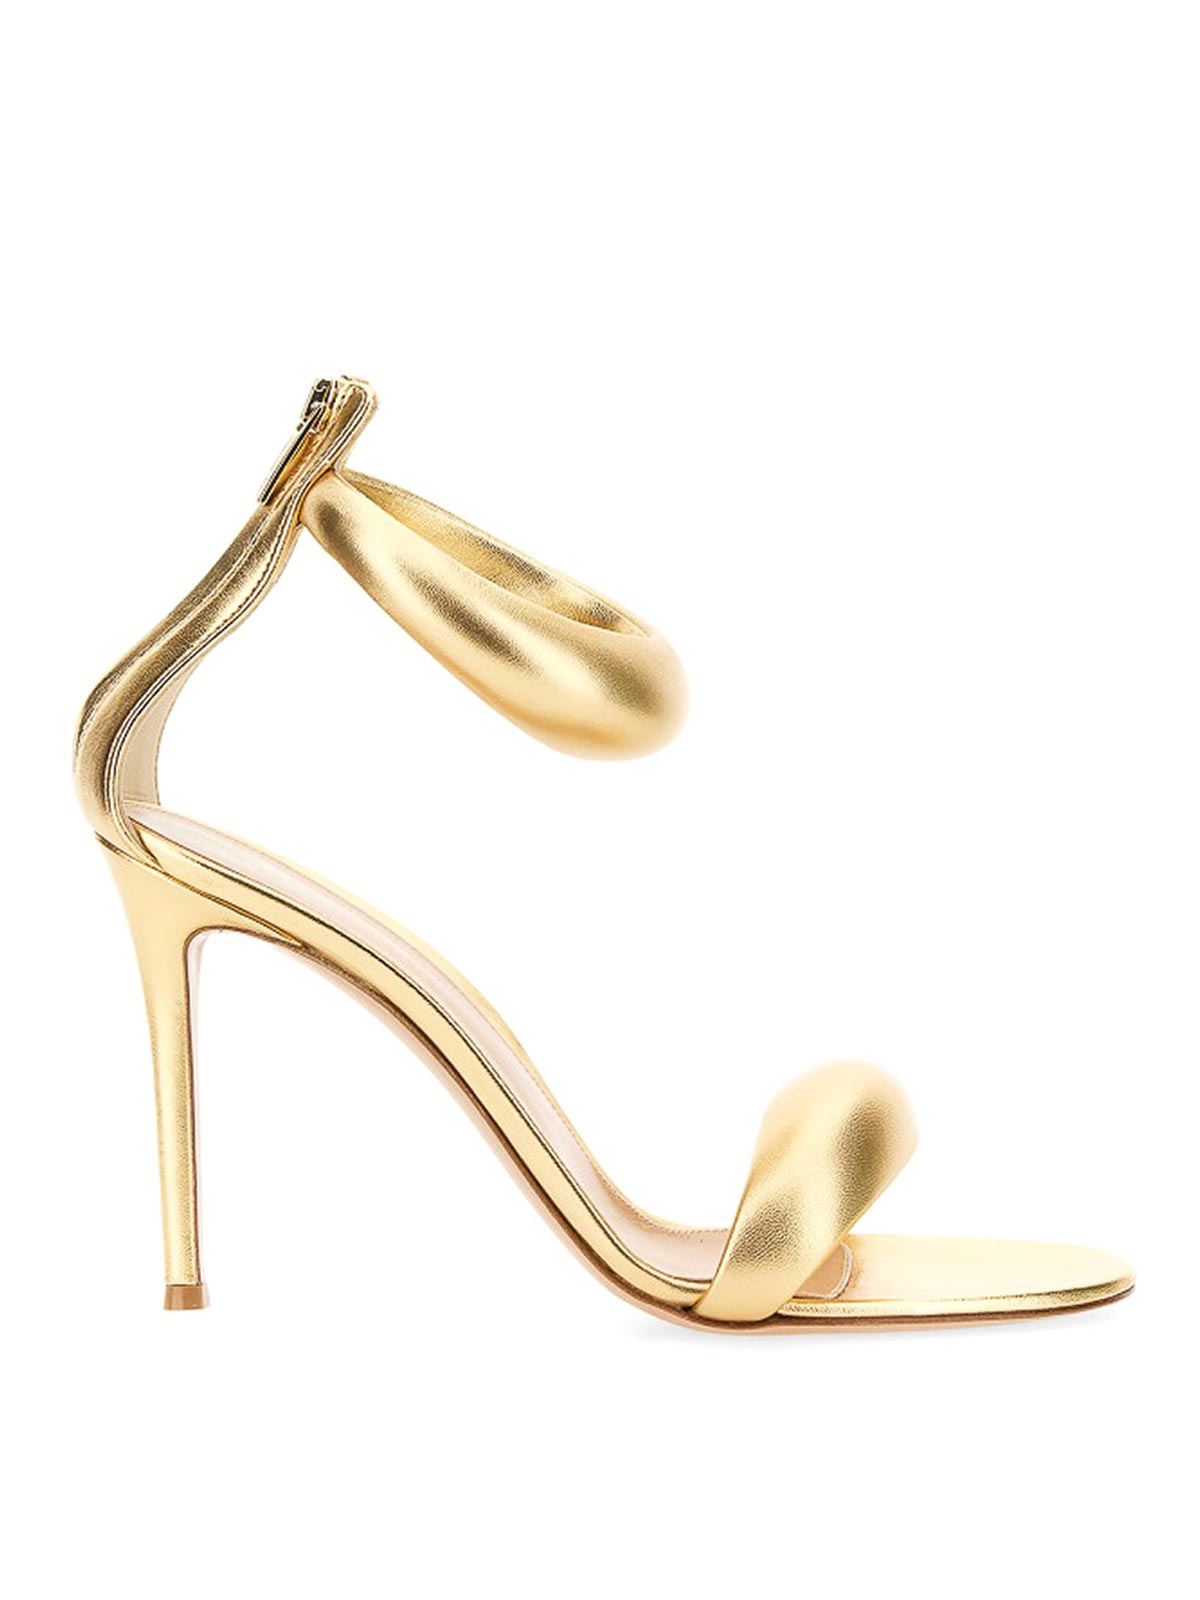 Shop Gianvito Rossi Sandalias - Sandal In Gold